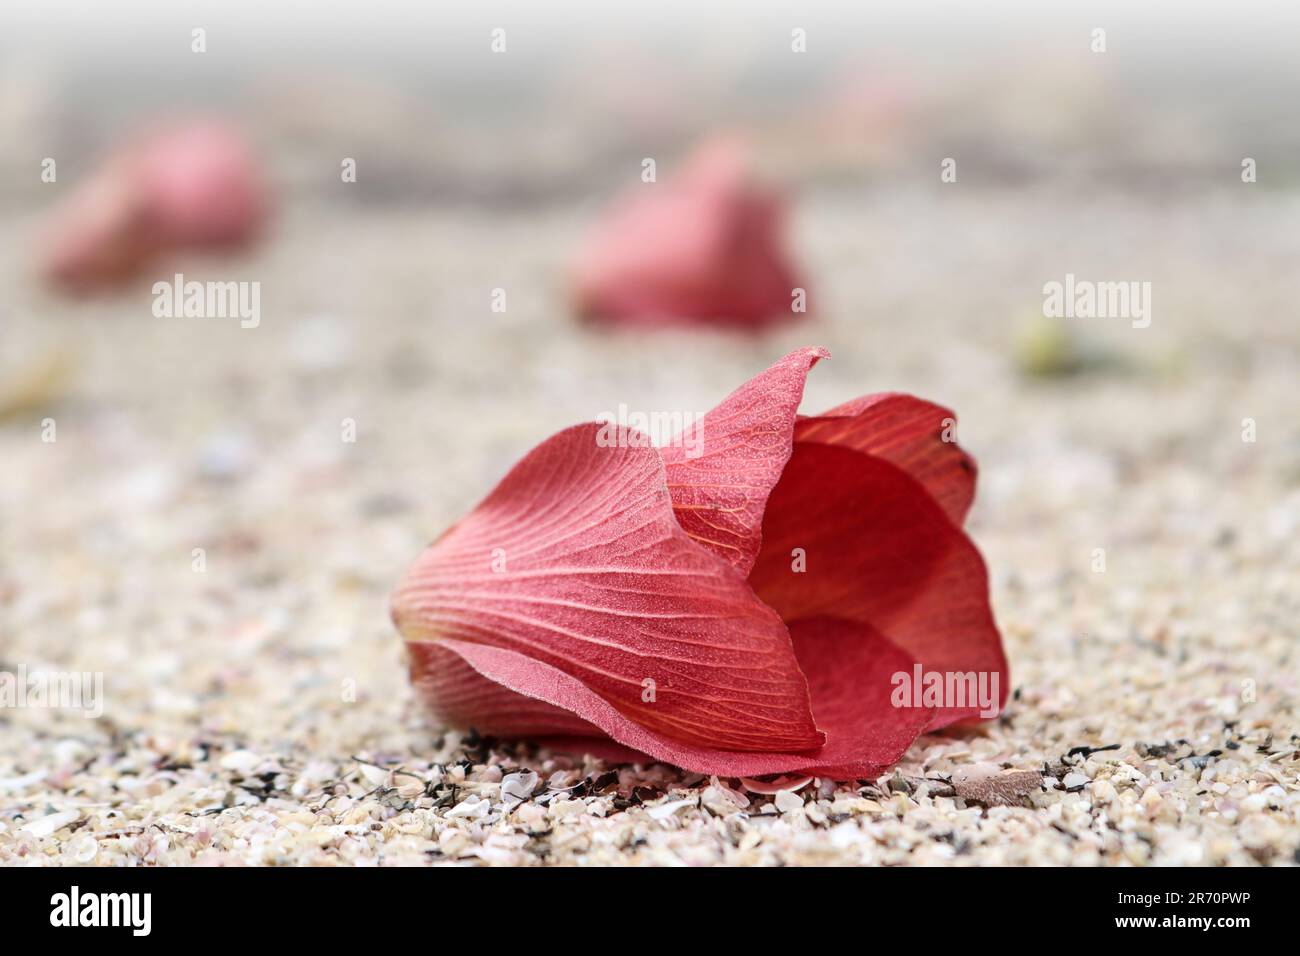 Fiore rosso caduto di hibiscus mare o costa cottonwood (Hibiscus tiliaceus) sulla sabbia. Foto Stock